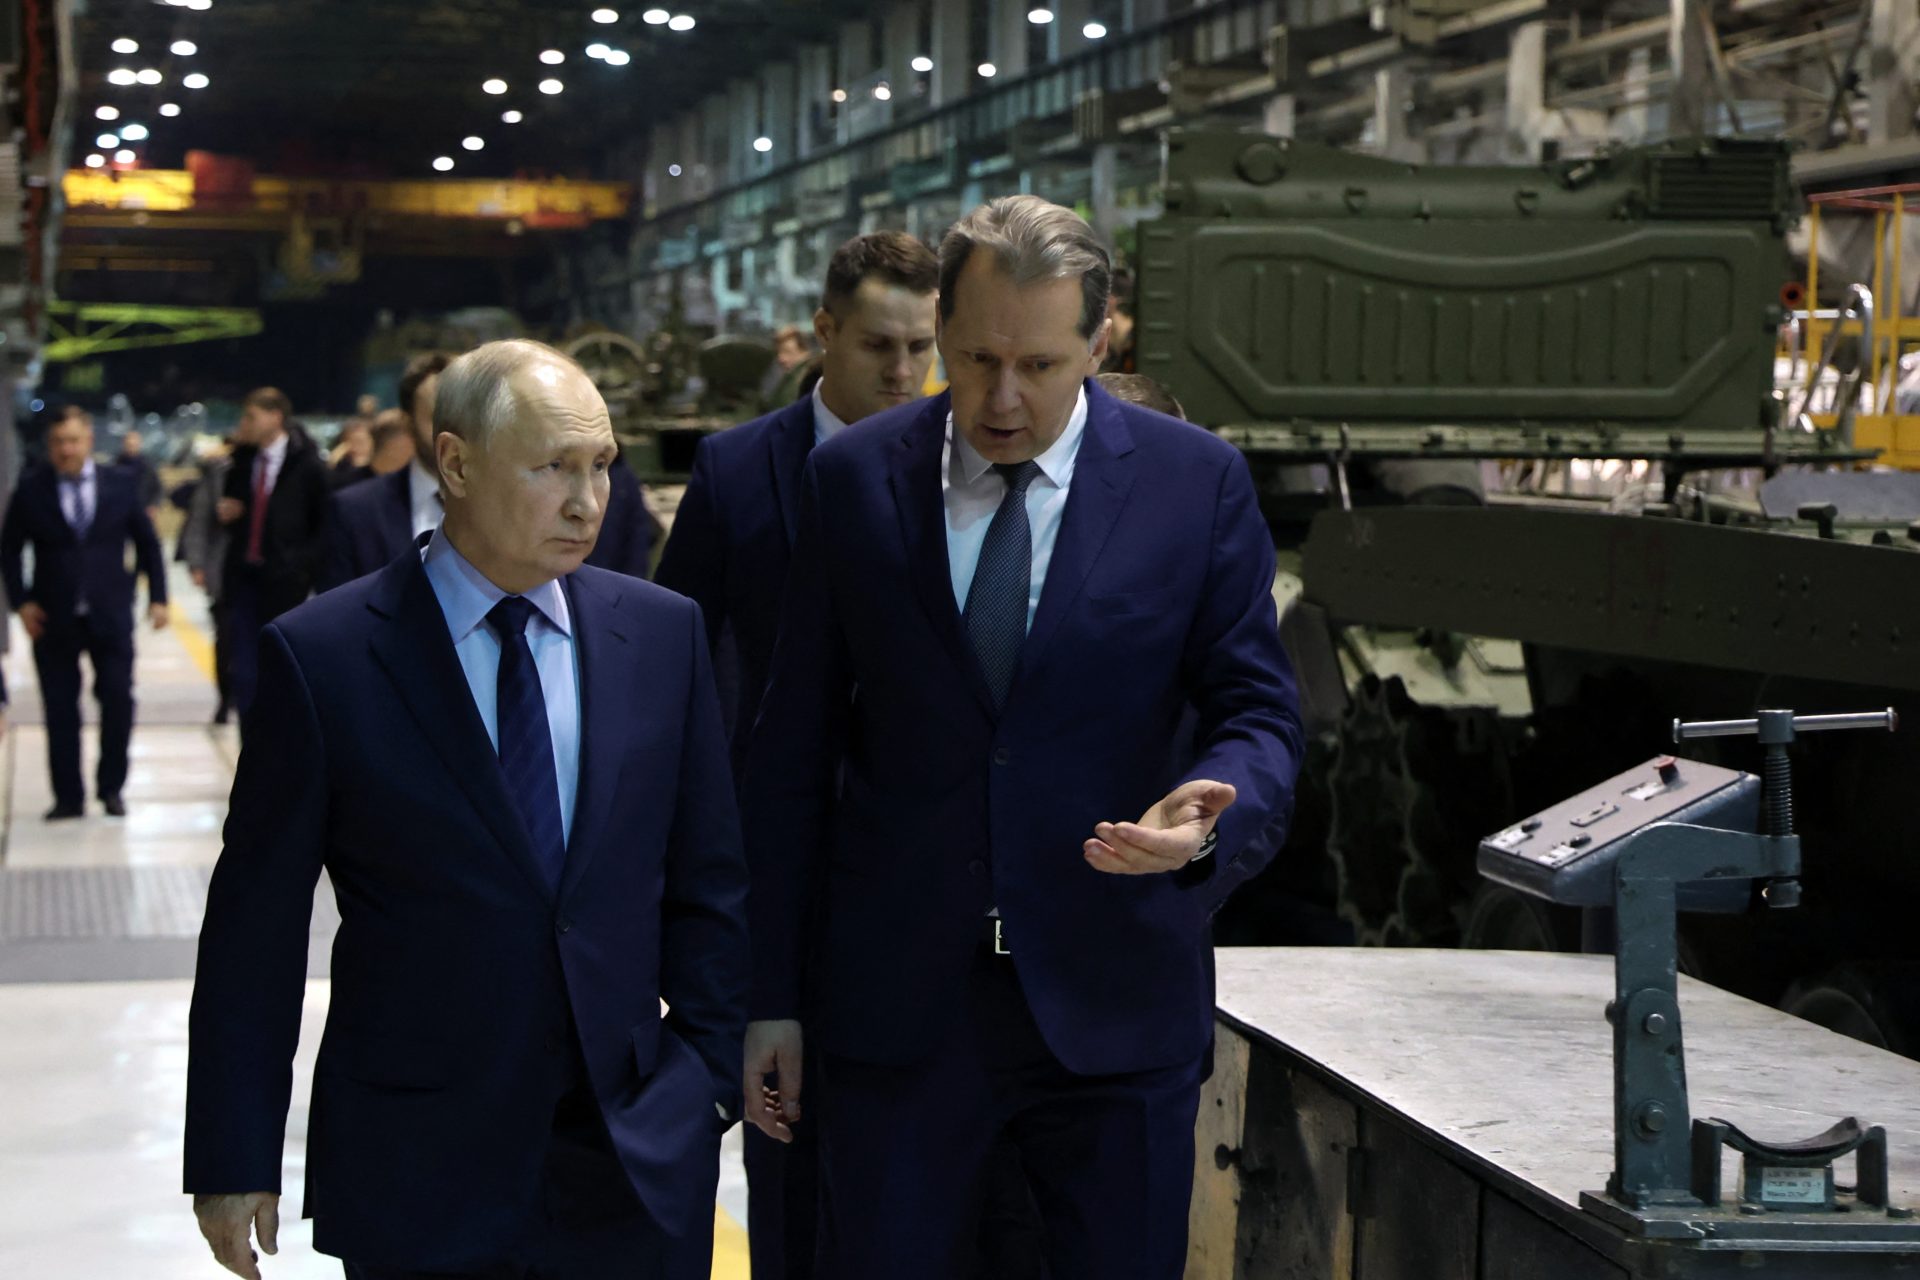 La production liée à la défense en Russie commence à devenir vraiment inquiétante